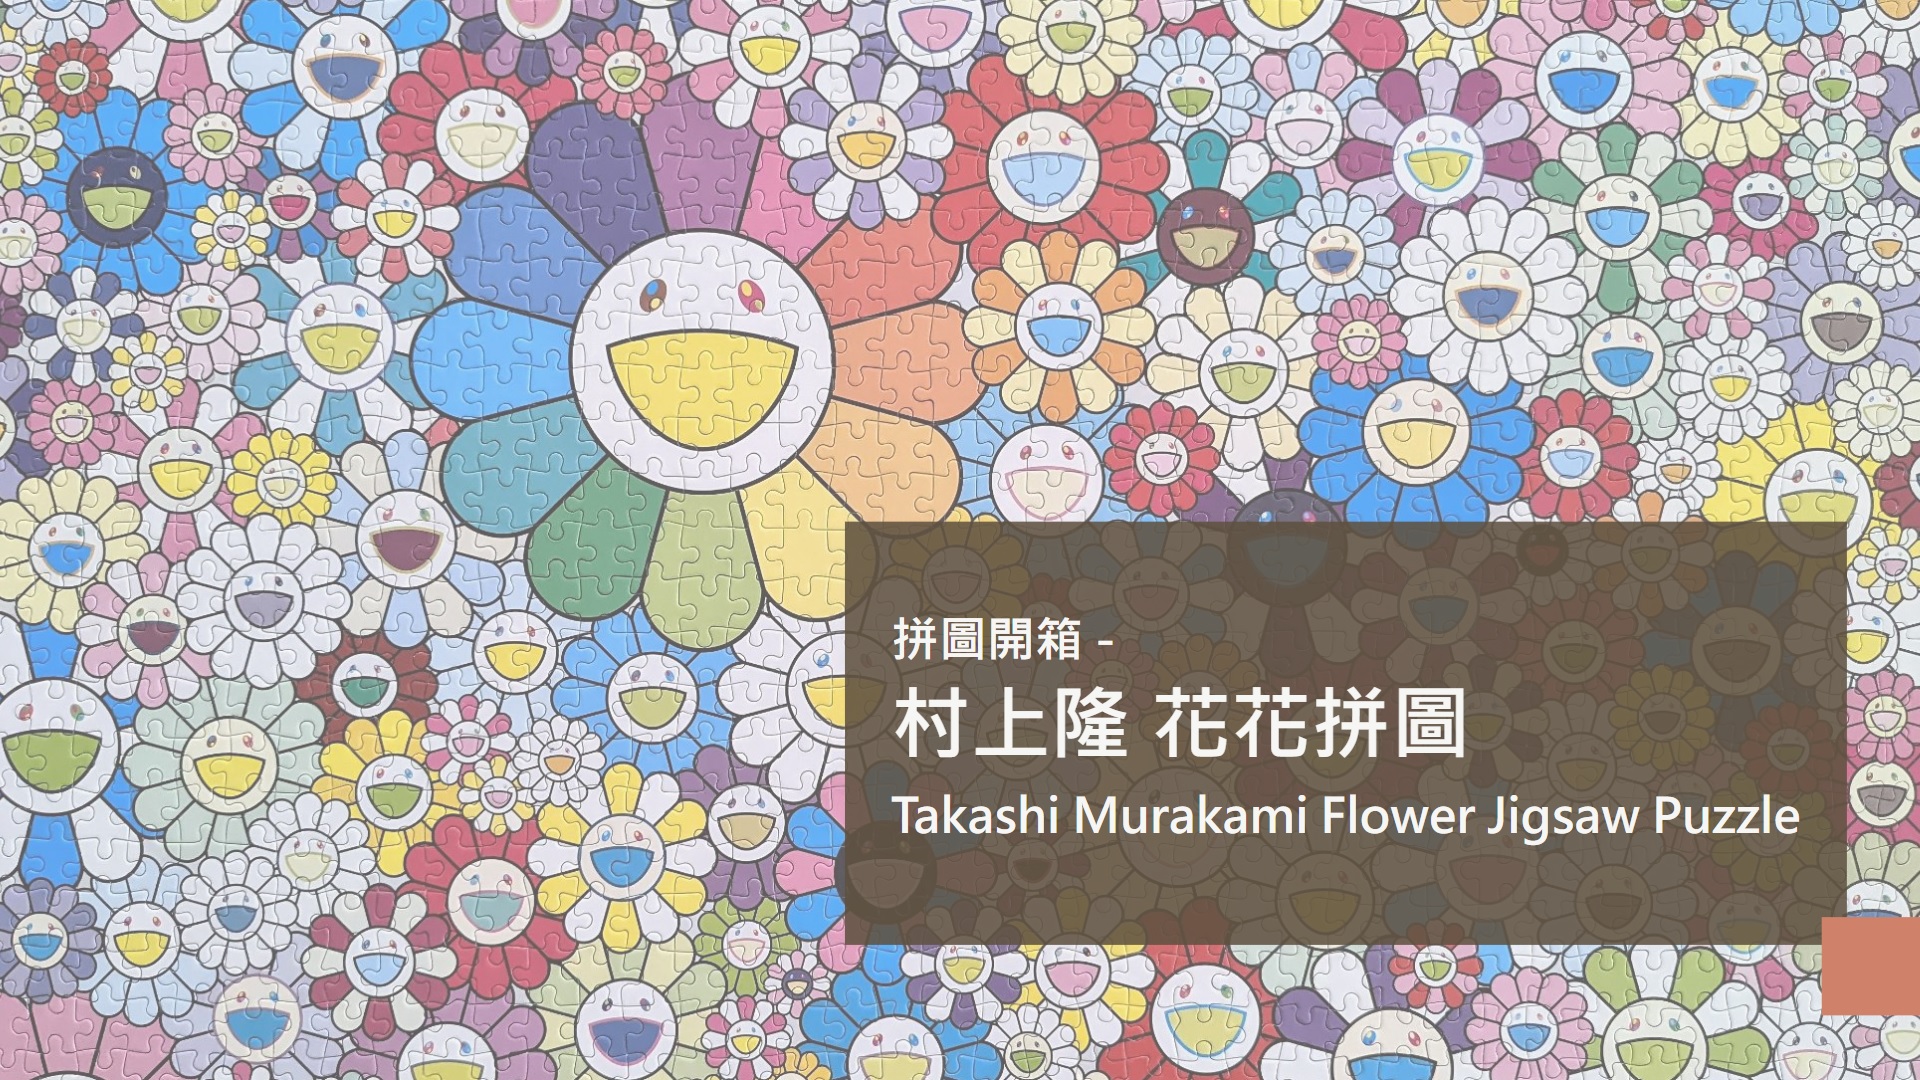 アンティー】 村上隆 flower jigsaw puzzle パズル 2個セットの通販 by